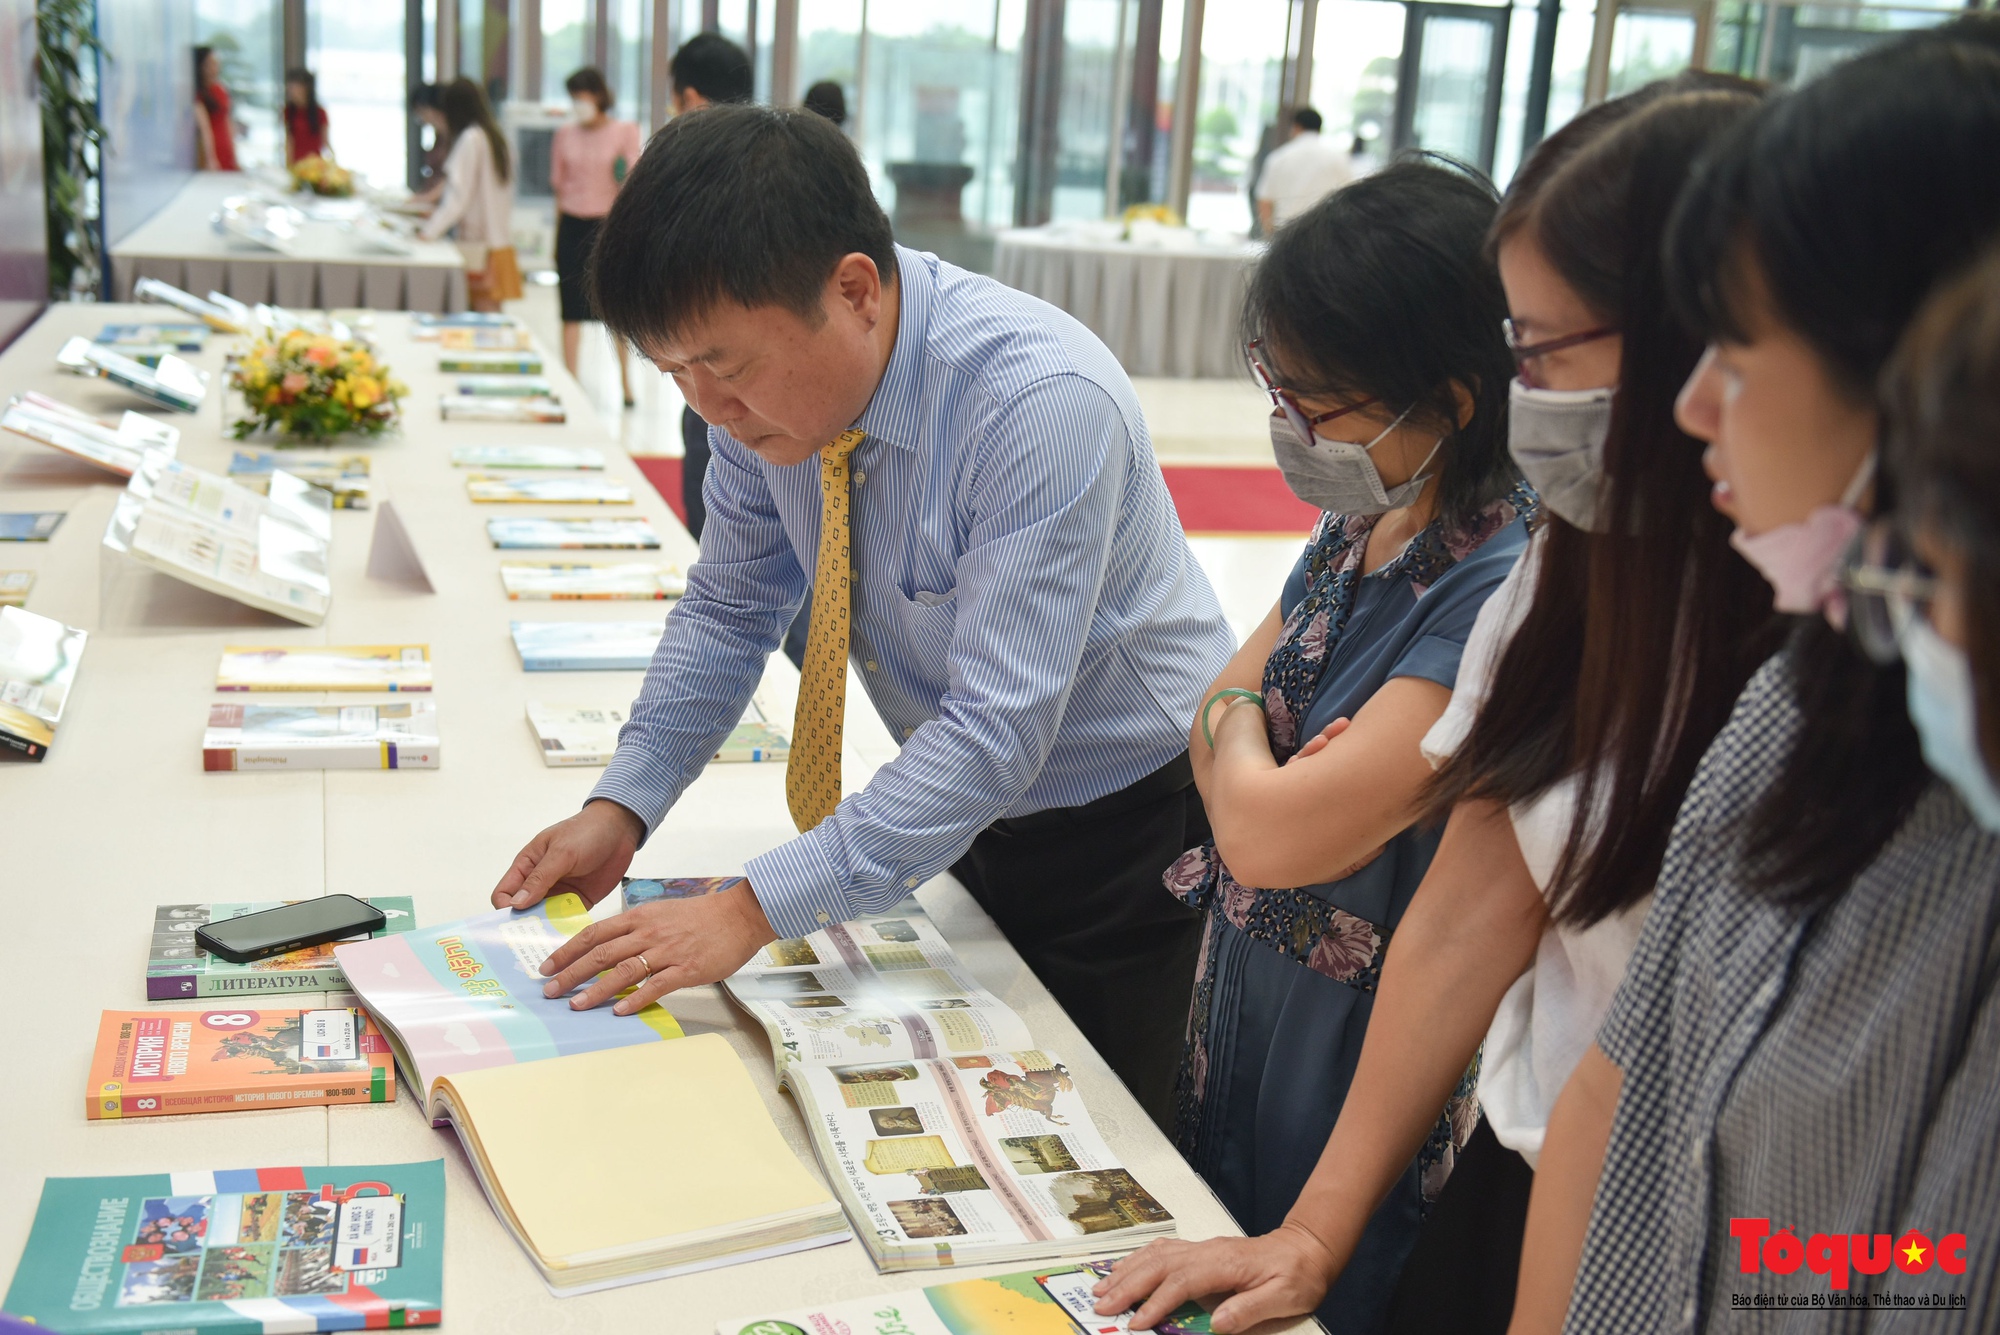 Hà Nội: Học sinh thủ đô hào hứng với hoạt động Trưng bày sách giáo khoa giáo dục phổ thông - Ảnh 7.